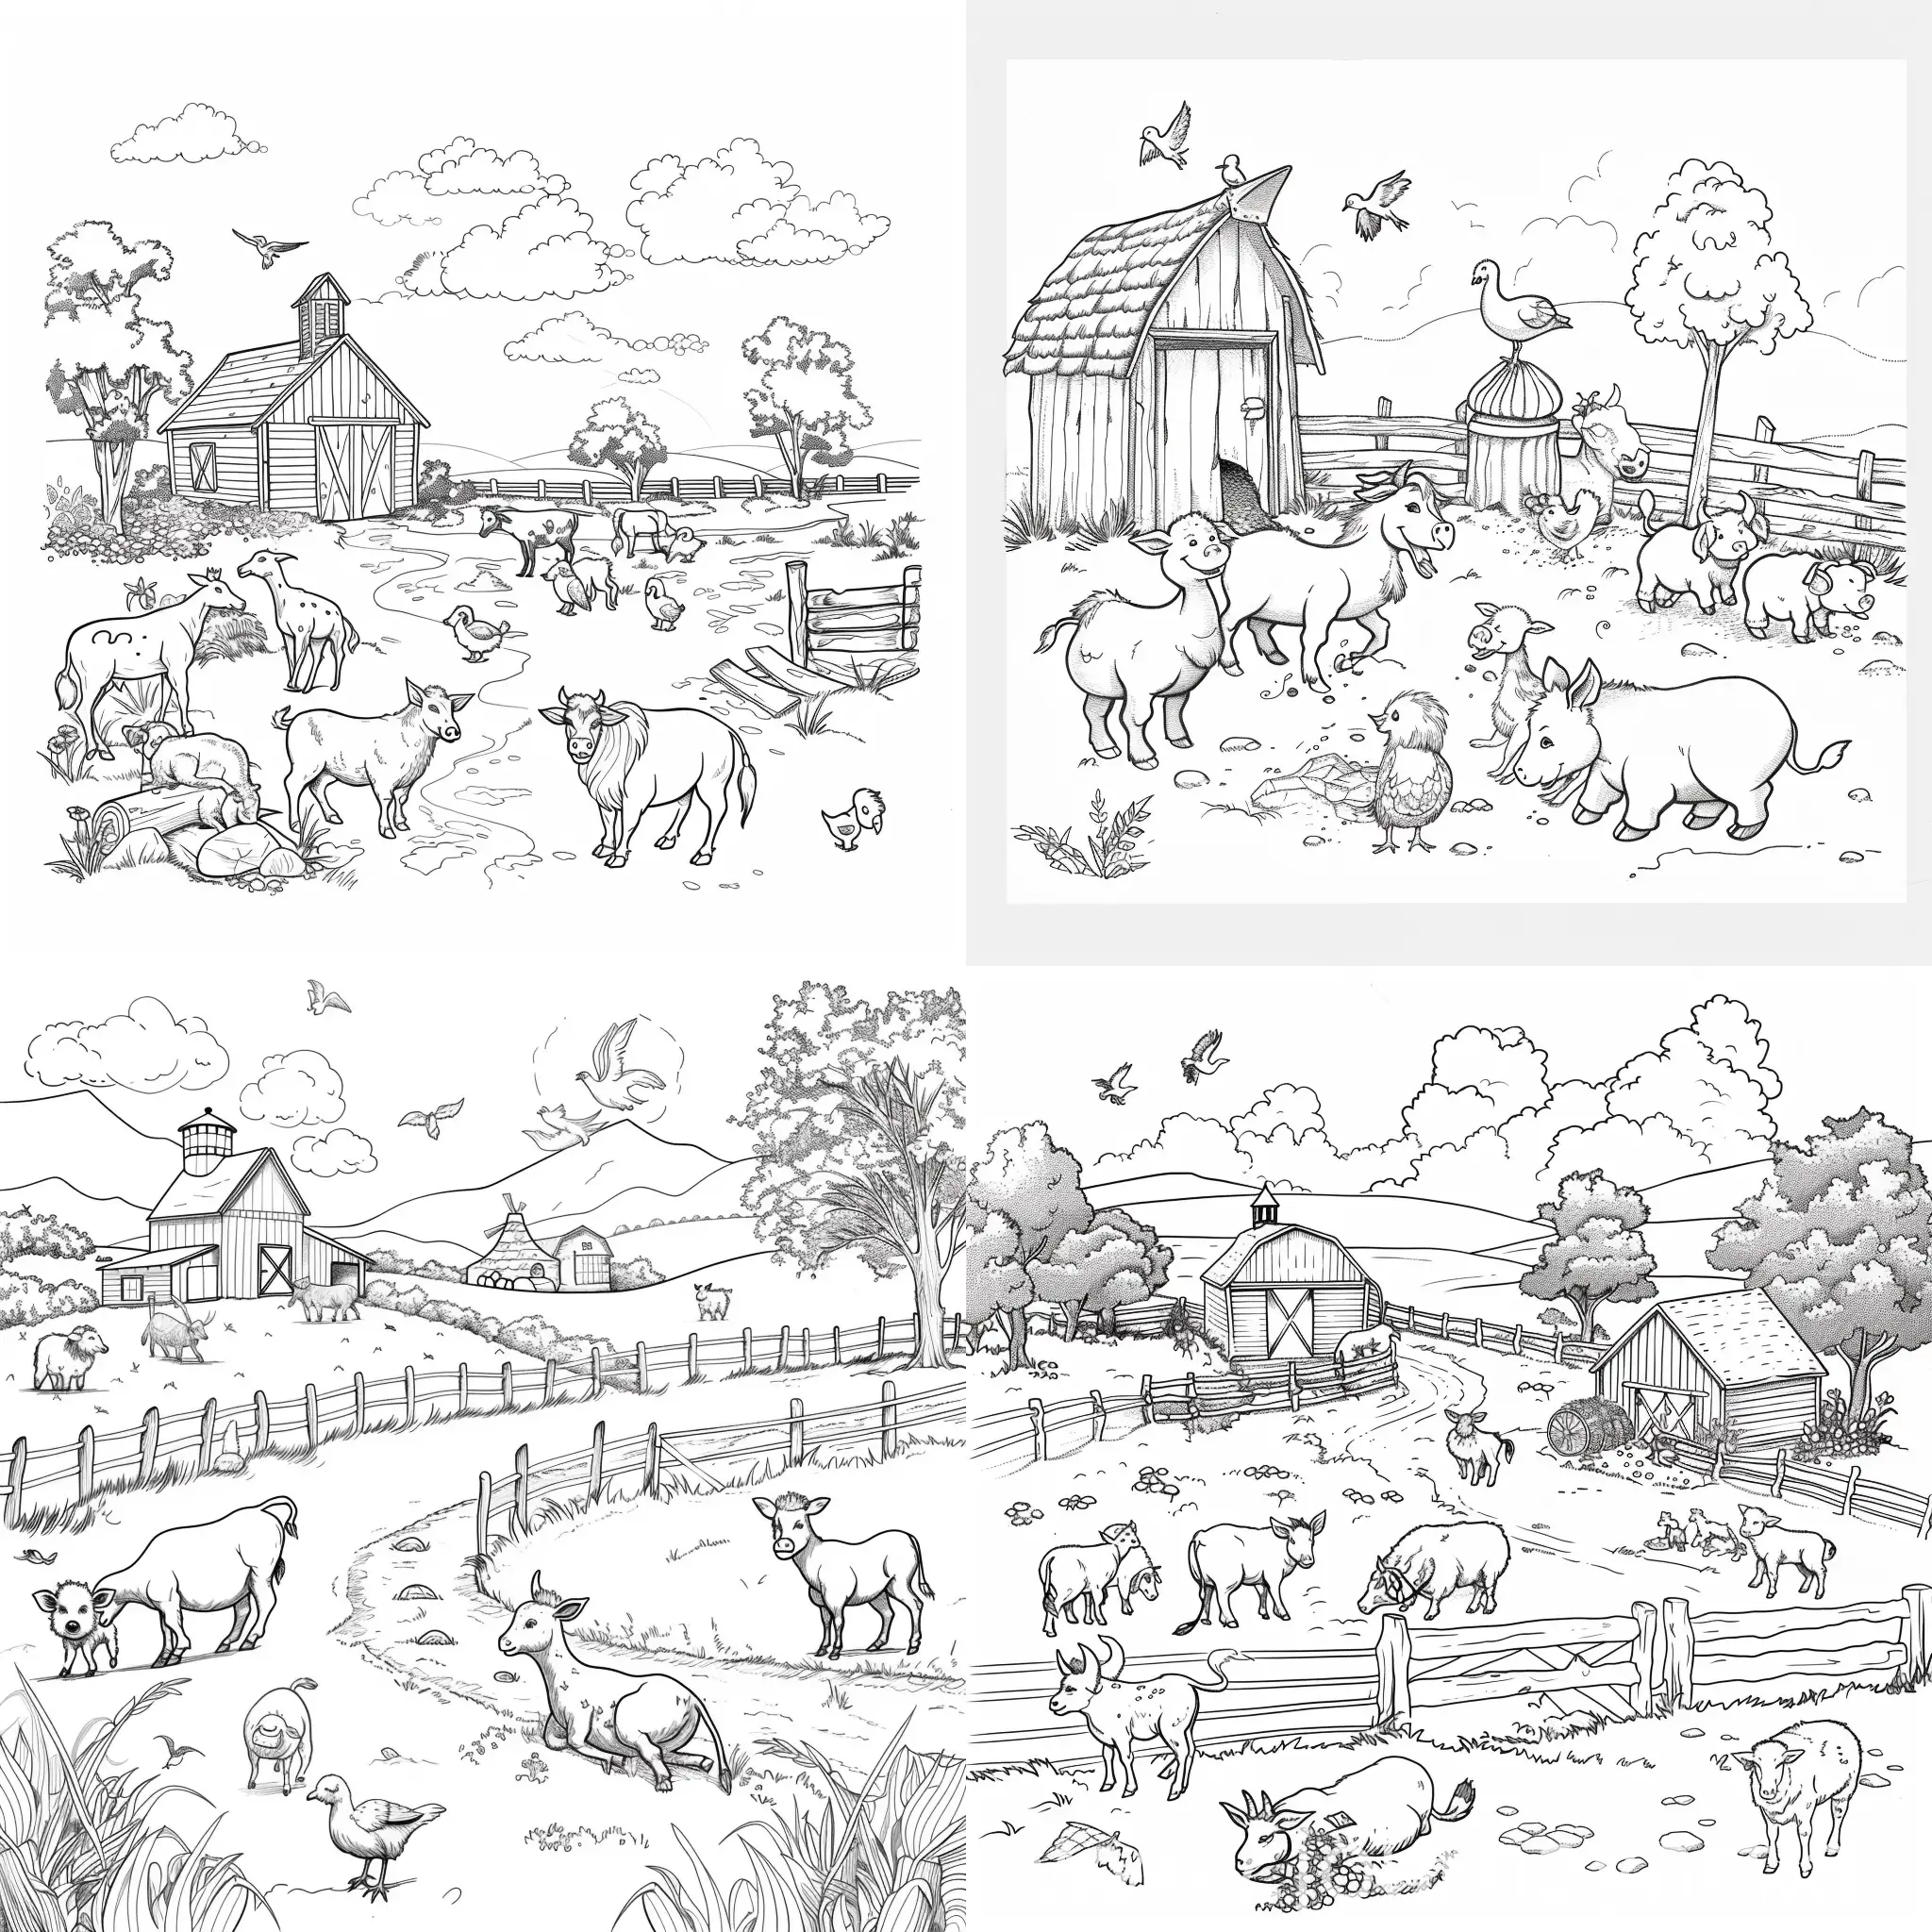 Dibuja una granja con animales de granja para libro de colorear de niños pequeños, sin escalas de grises en una hoja blanca con fondo liso sin dibujos